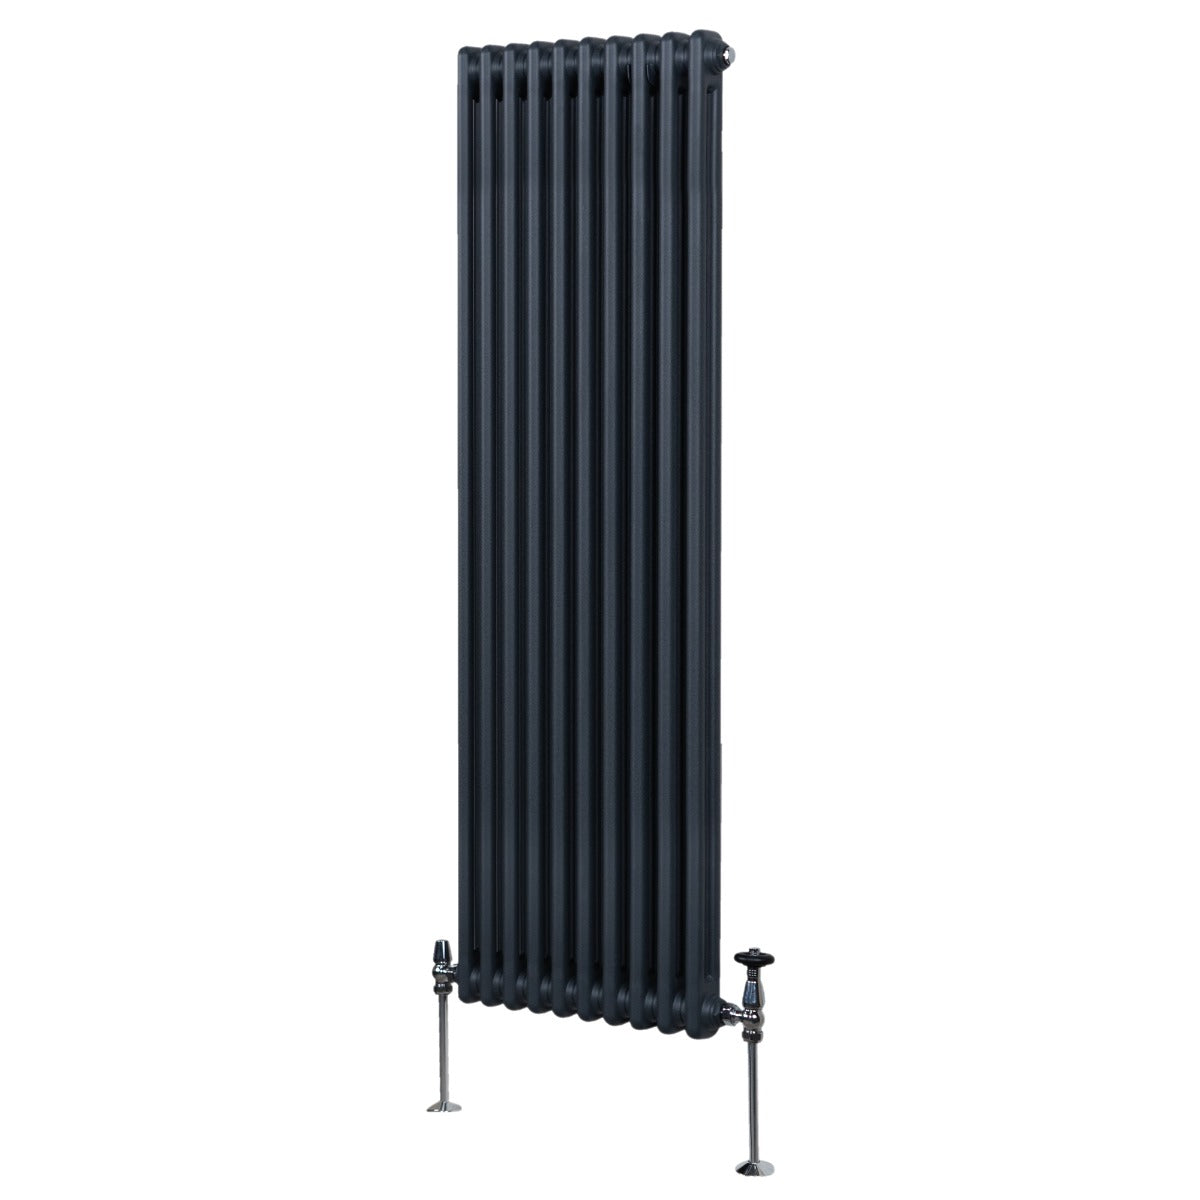 Termosifone Radiatore a 2 colonne per riscaldamento centralizzato verticale Grigio Antracite 180x47cm